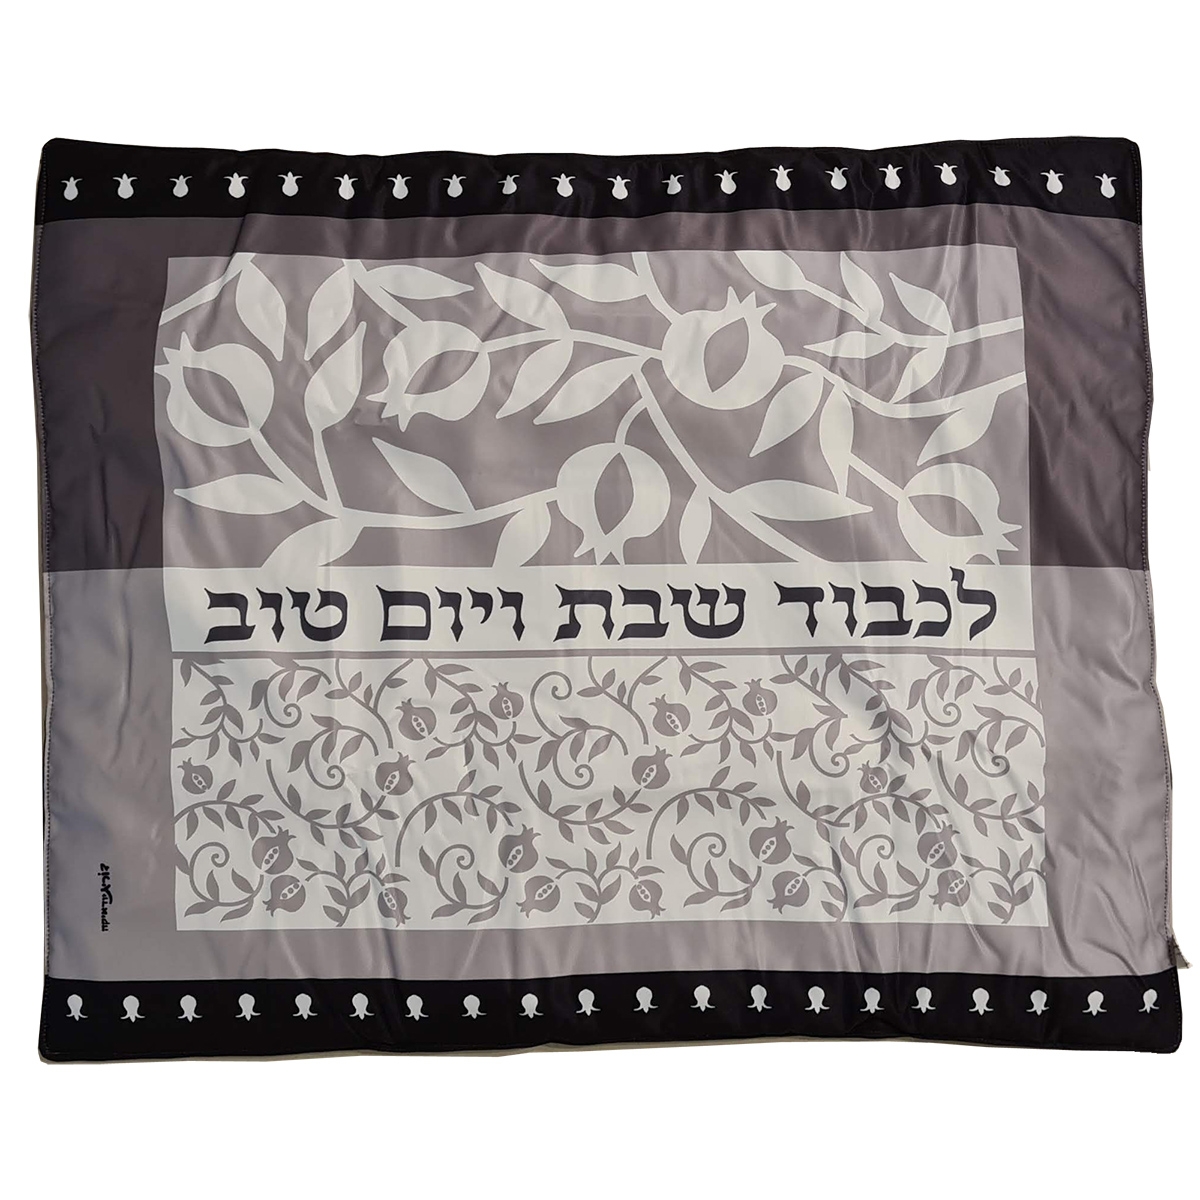 Dorit Judaica Shabbat Plata Cover (Blech Cover) - Pomegranates Print - 1